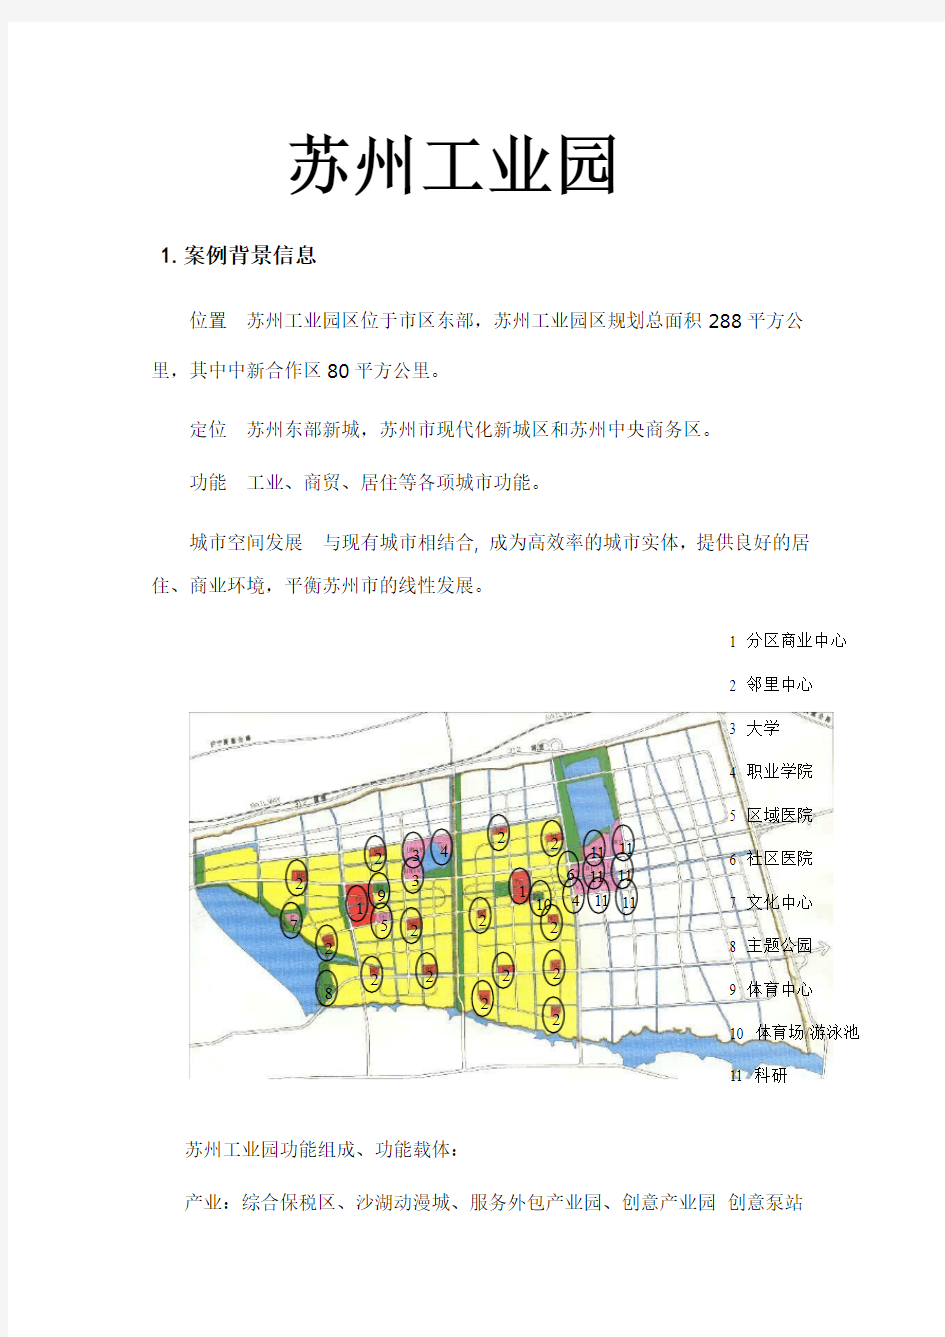 中国江苏苏州工业园区案例分析